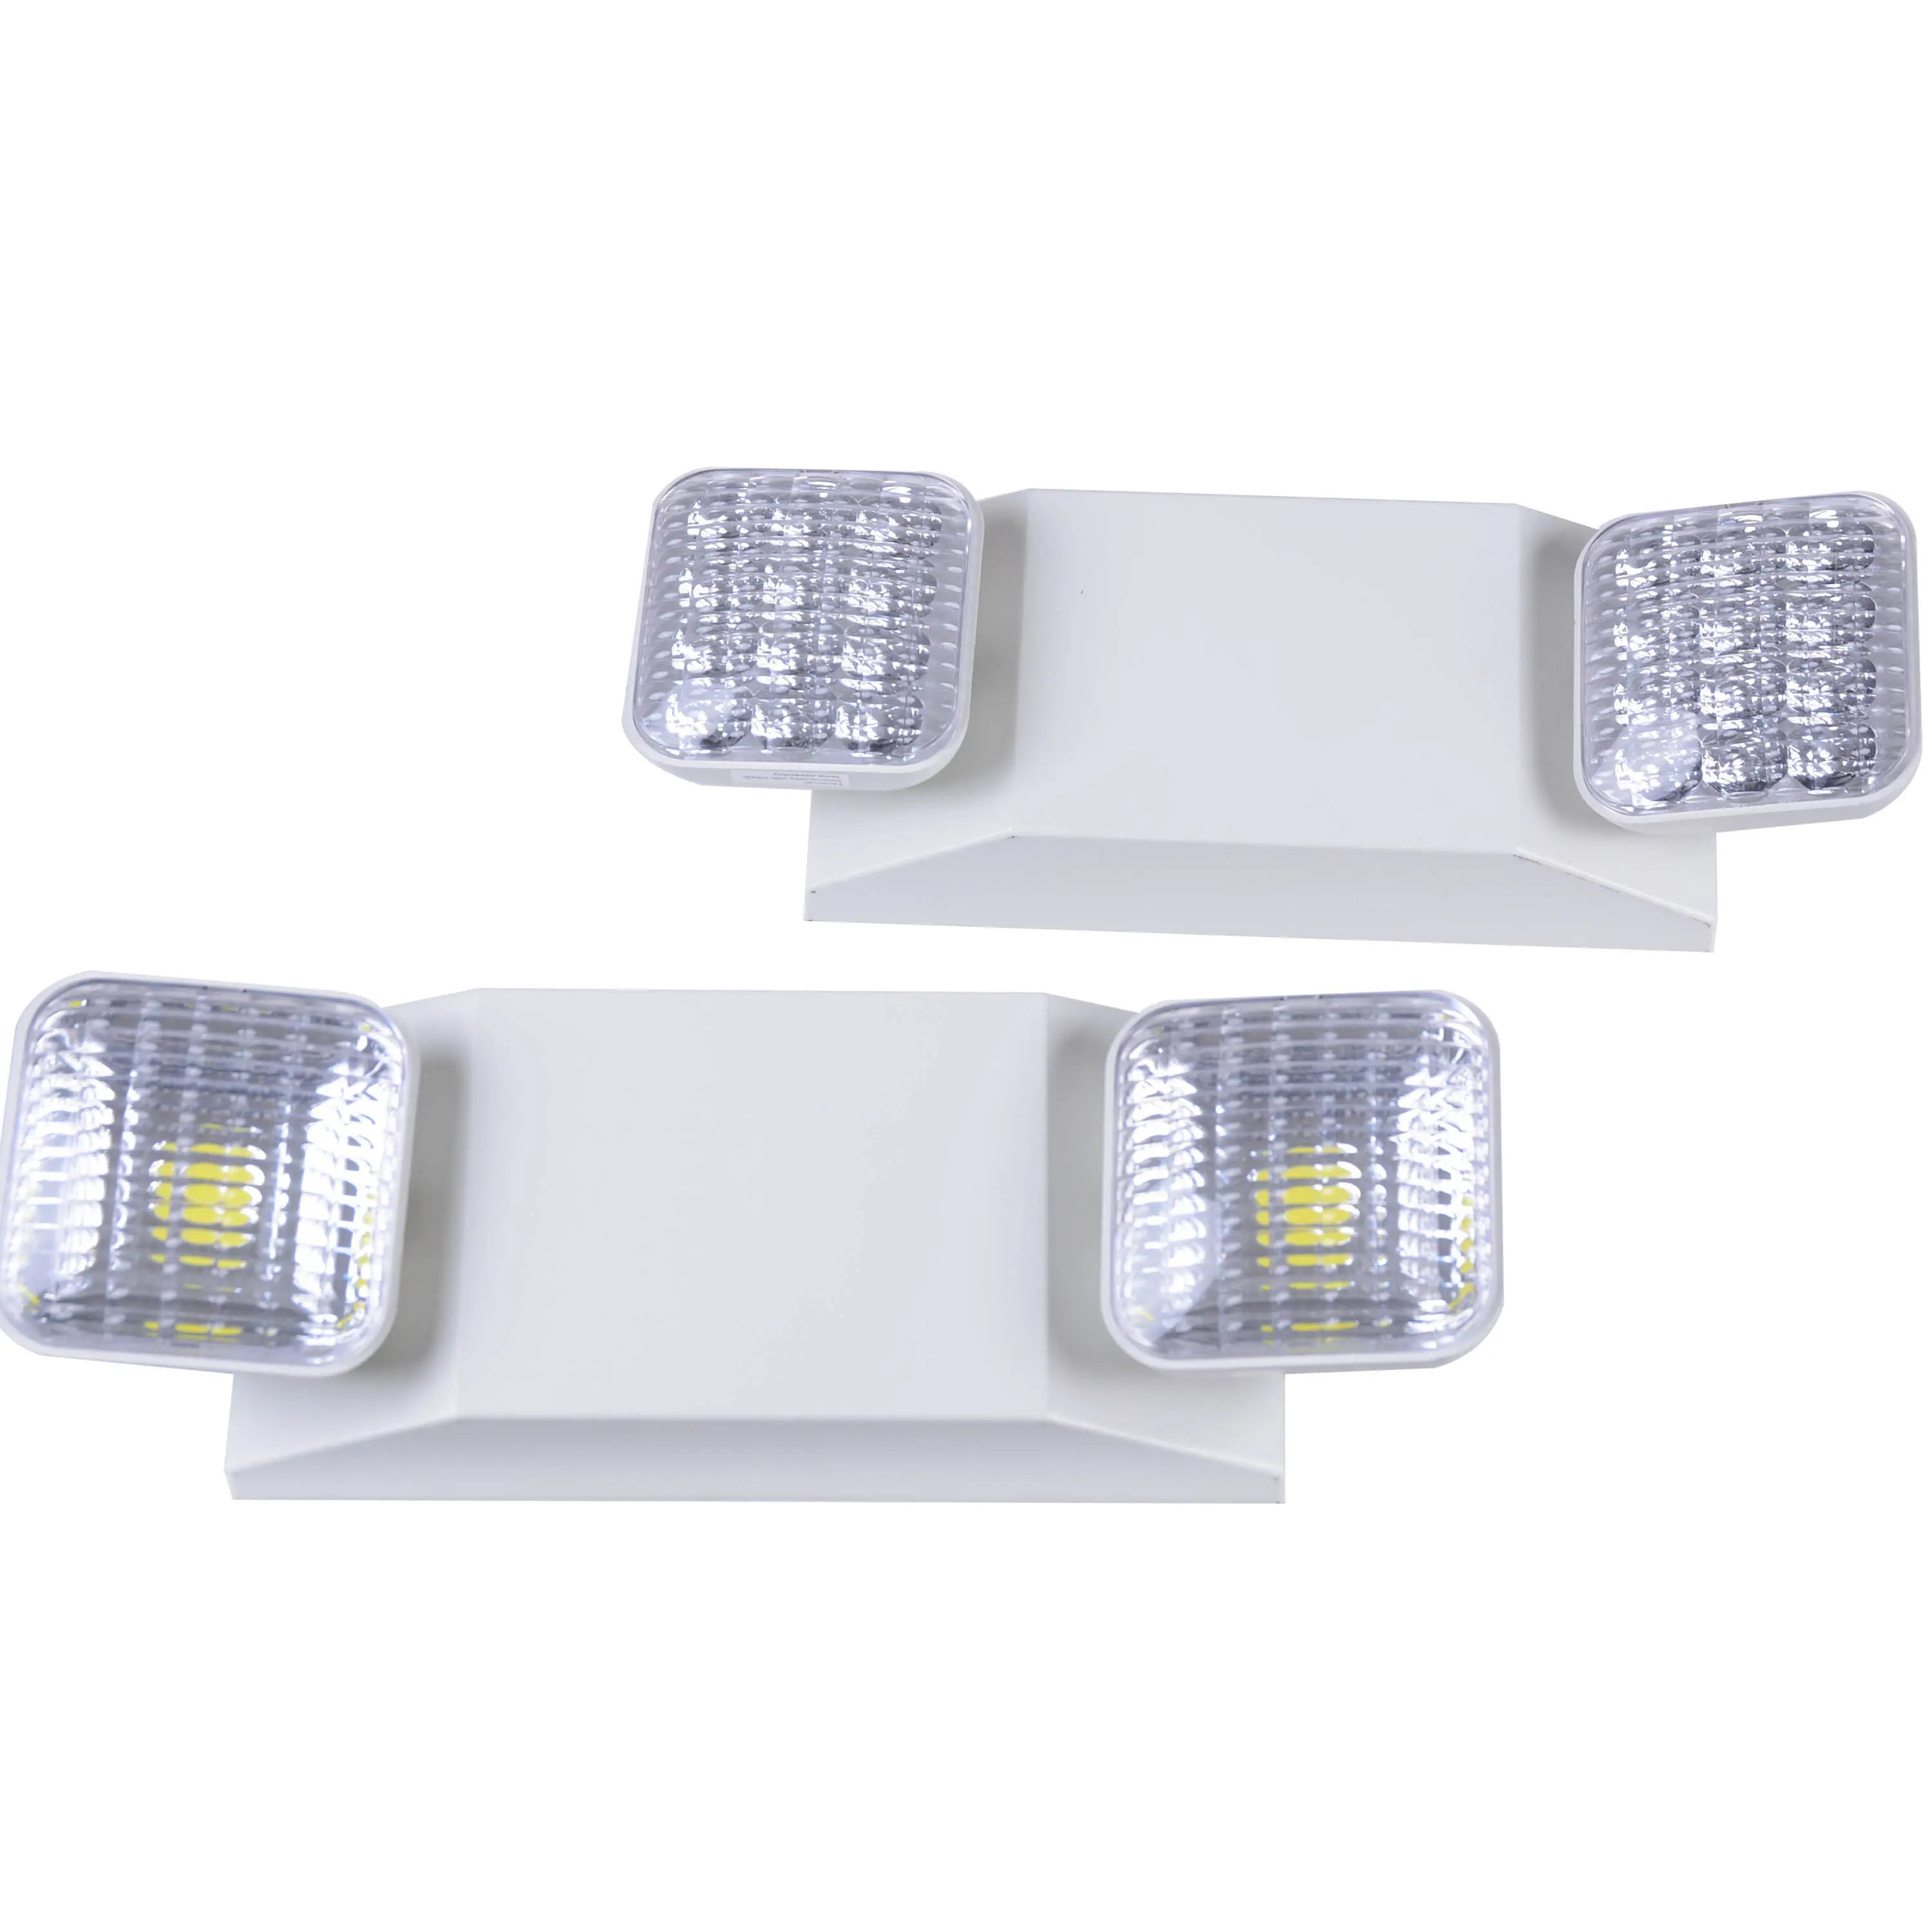 Luz LED de emergencia de doble cabezal, luz de emergencia recargable con interfaz de usuario incluida